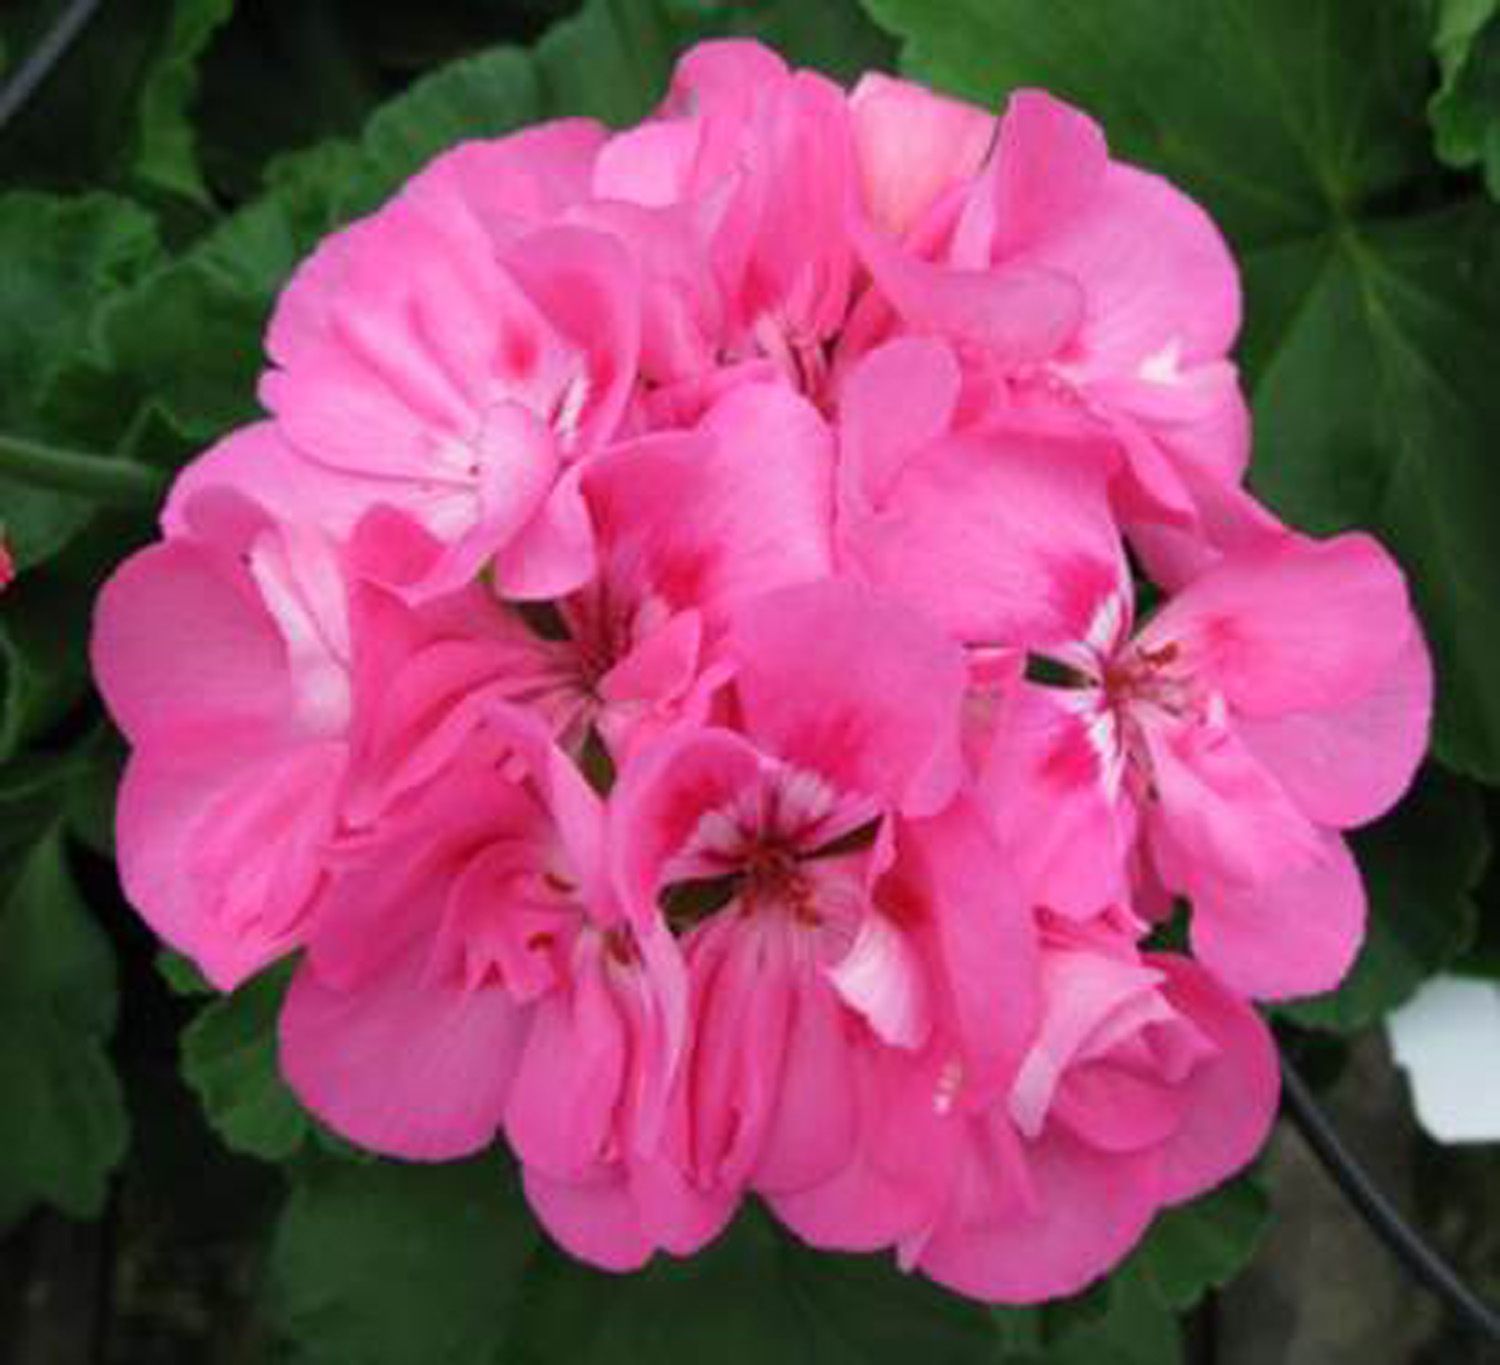 patriot tickled pink geranium - Google Search | Patio, Garden ...